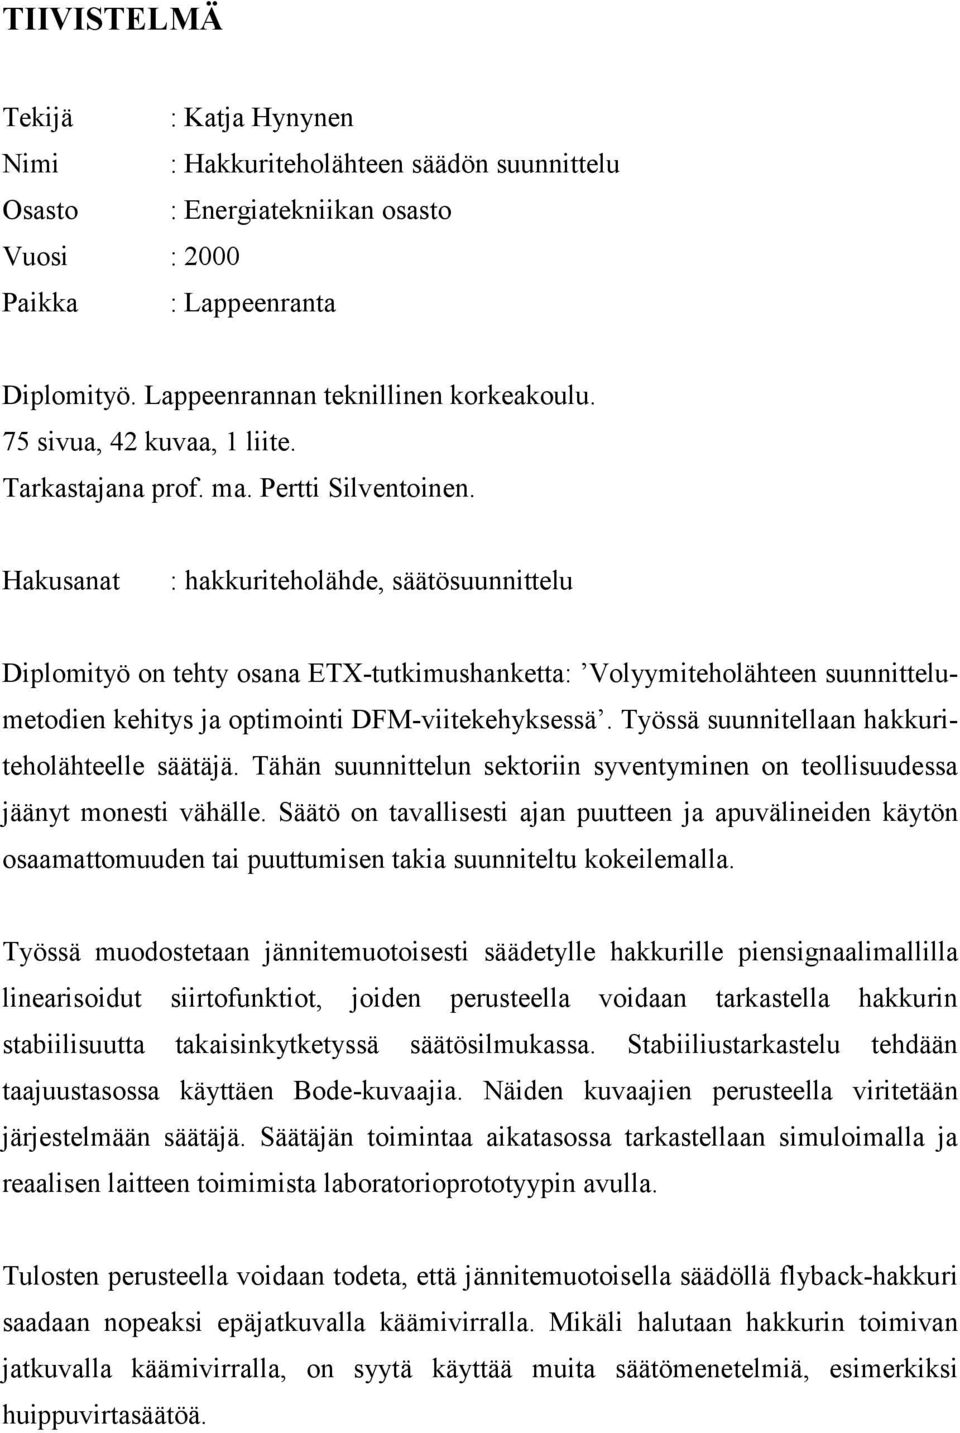 Hakusanat : hakkuitehlähde, säätösuunnittelu Diplmityö n tehty sana ETX-tutkimushanketta: Vlyymitehlähteen suunnittelumetdien kehitys ja ptiminti DFM-viitekehyksessä.